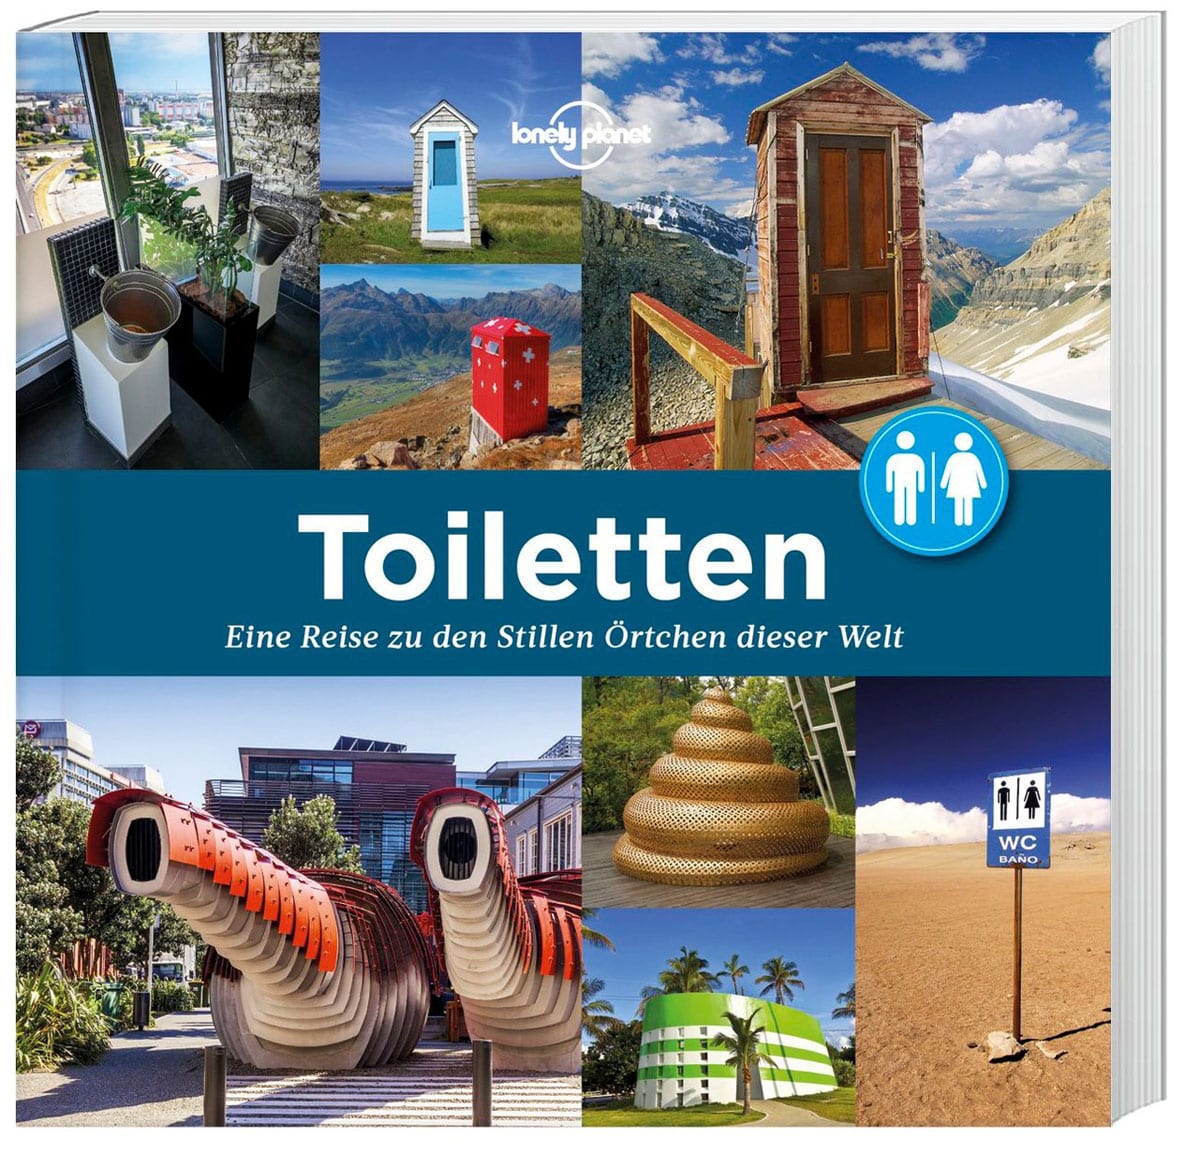 Toiletten Lonely Planet